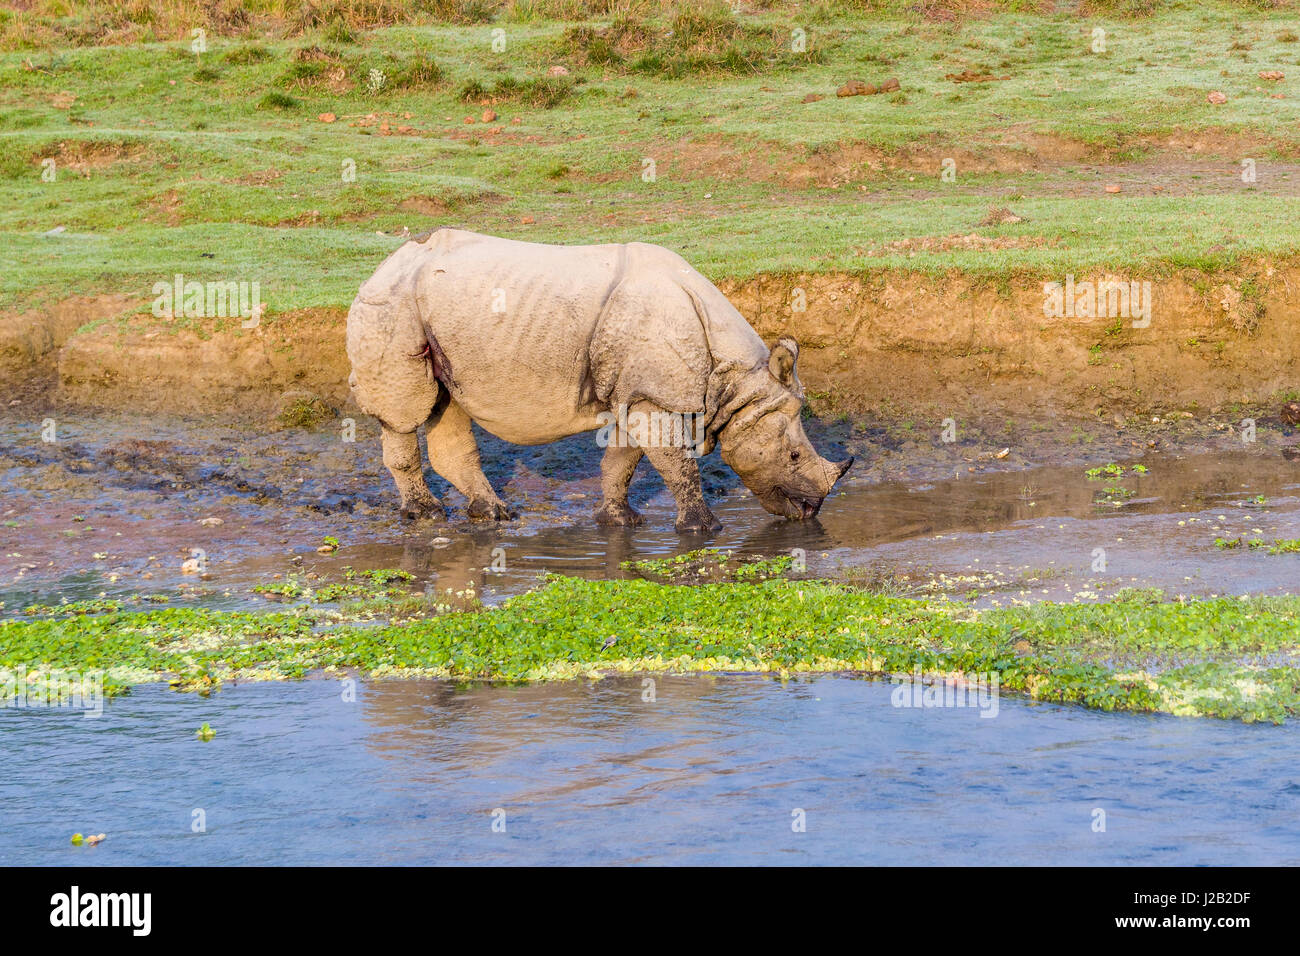 Un rhinocéros à une corne, indien (Rhinoceros unicornis) marche le long de la rivière Rapti in chitwan national park Banque D'Images